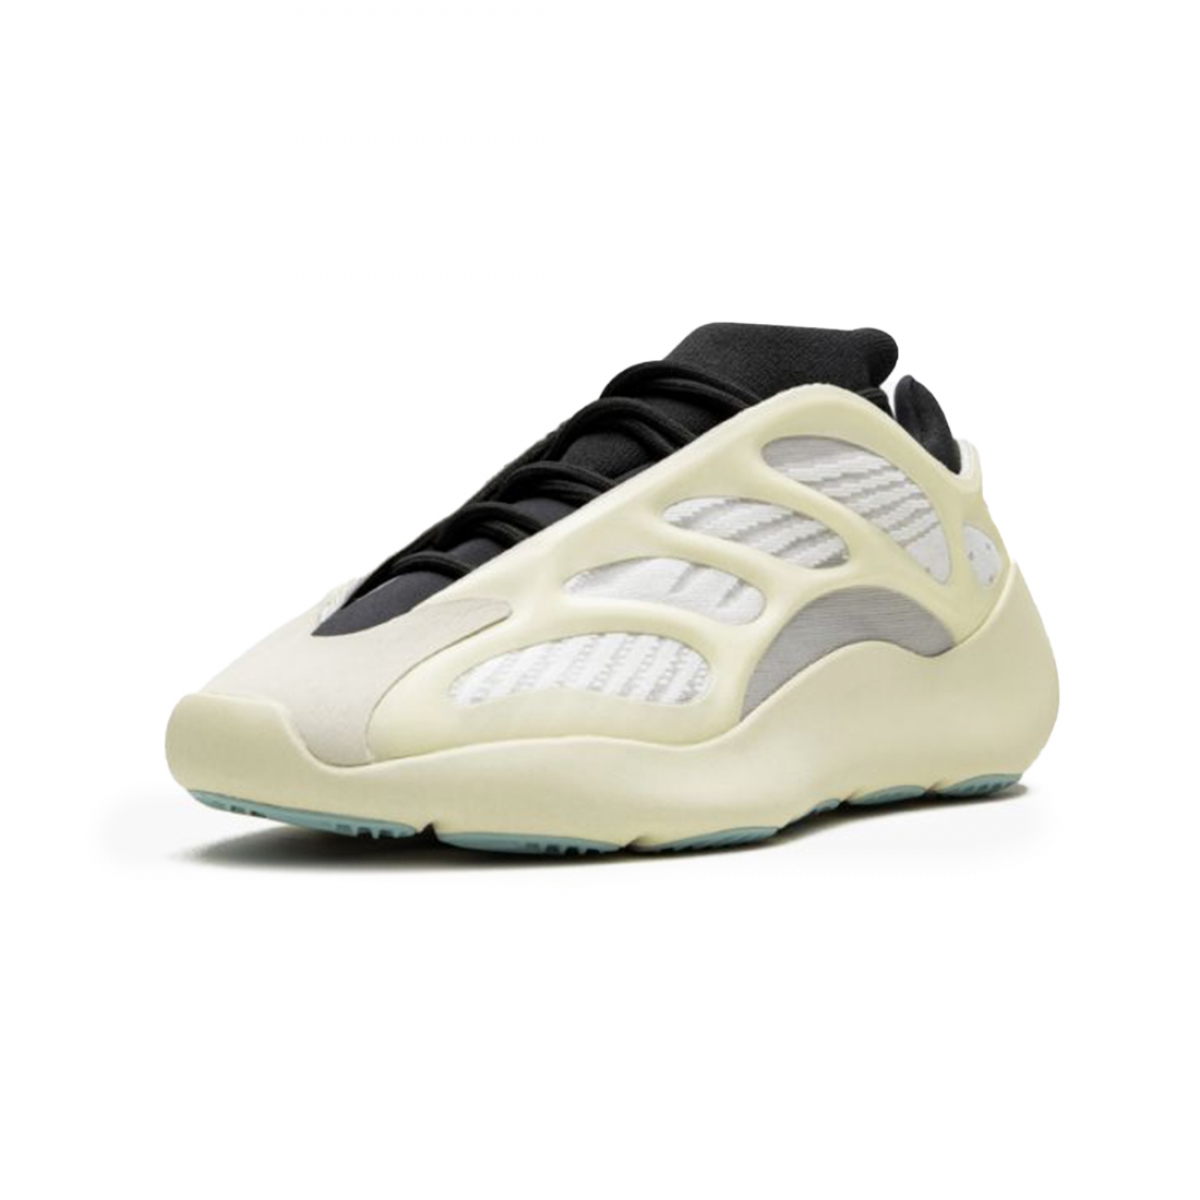 Yeezy 700 V3 “Azael” – PK-Shoes